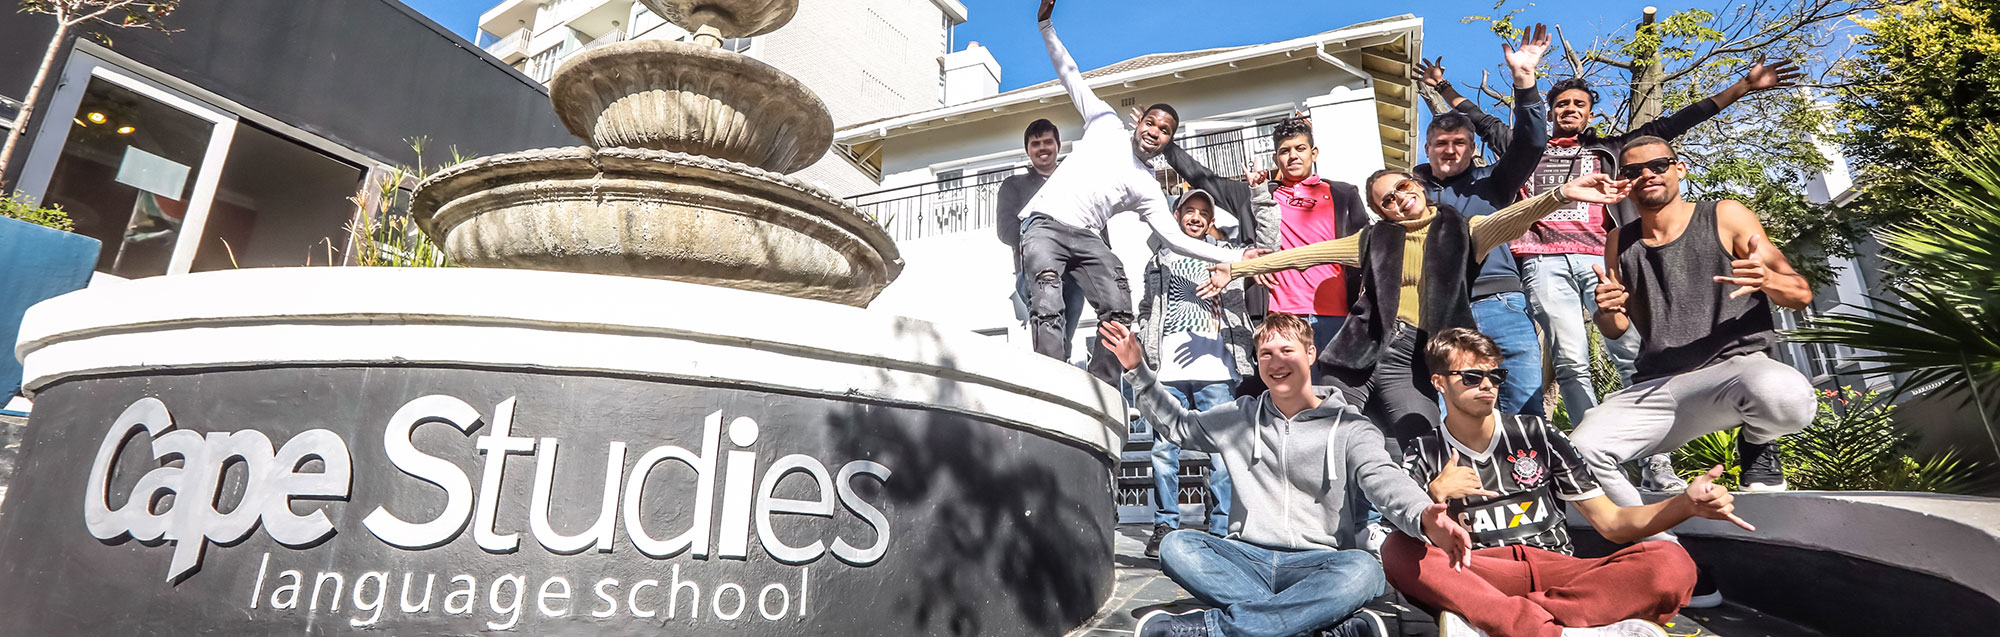 Valutazioni dei nostri ex studenti su CapeStudies Cape Town 